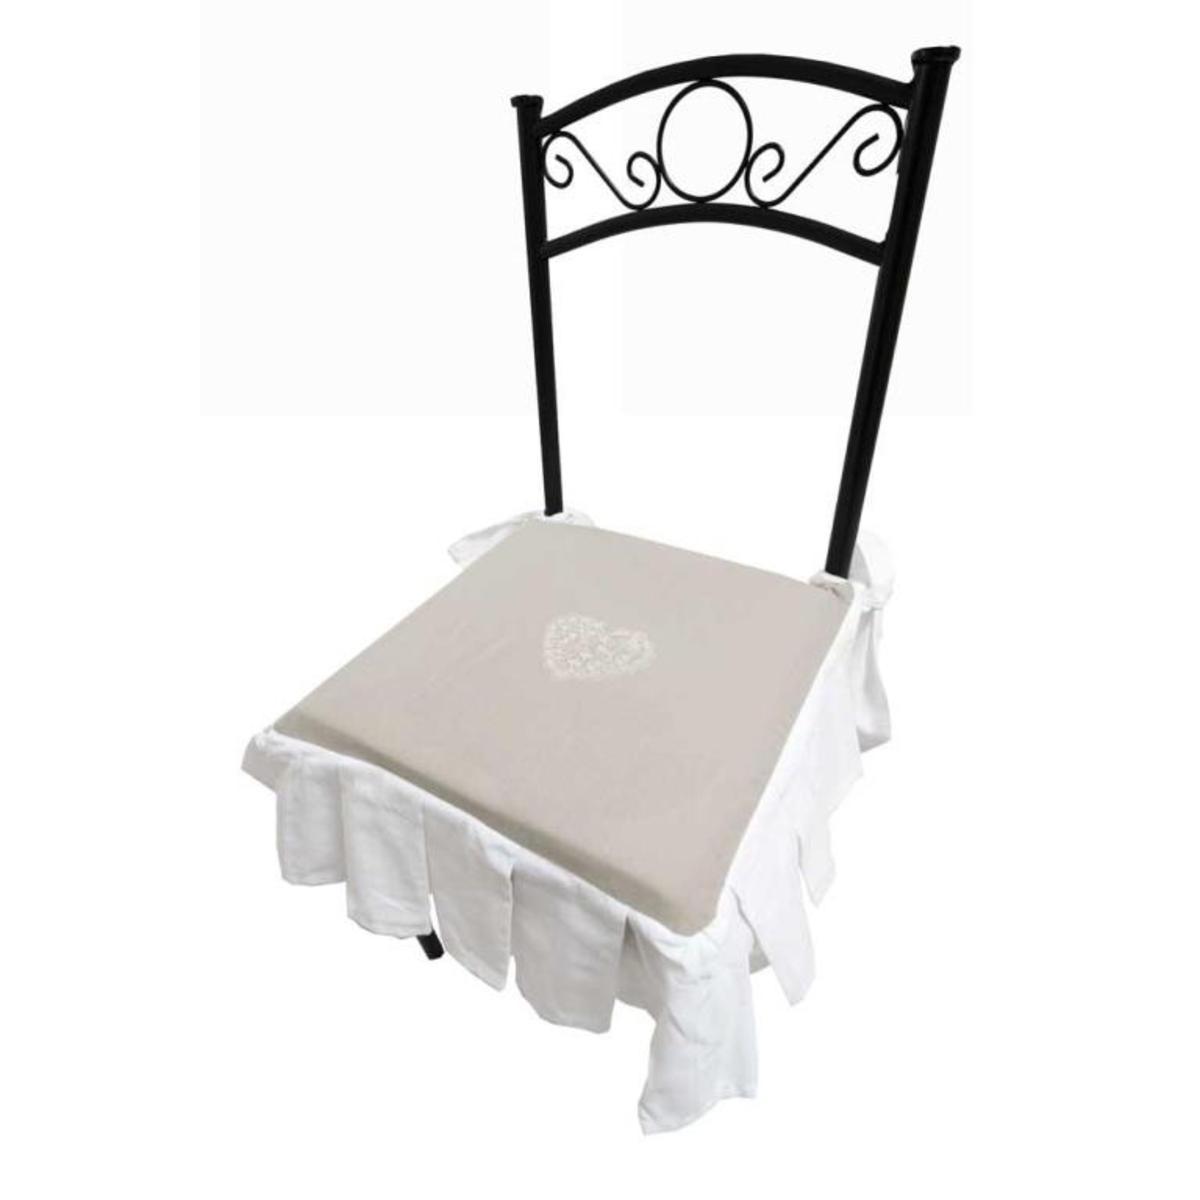 Galette de chaise Secret - 40 x H 3 x 40 cm - Beige, blanc